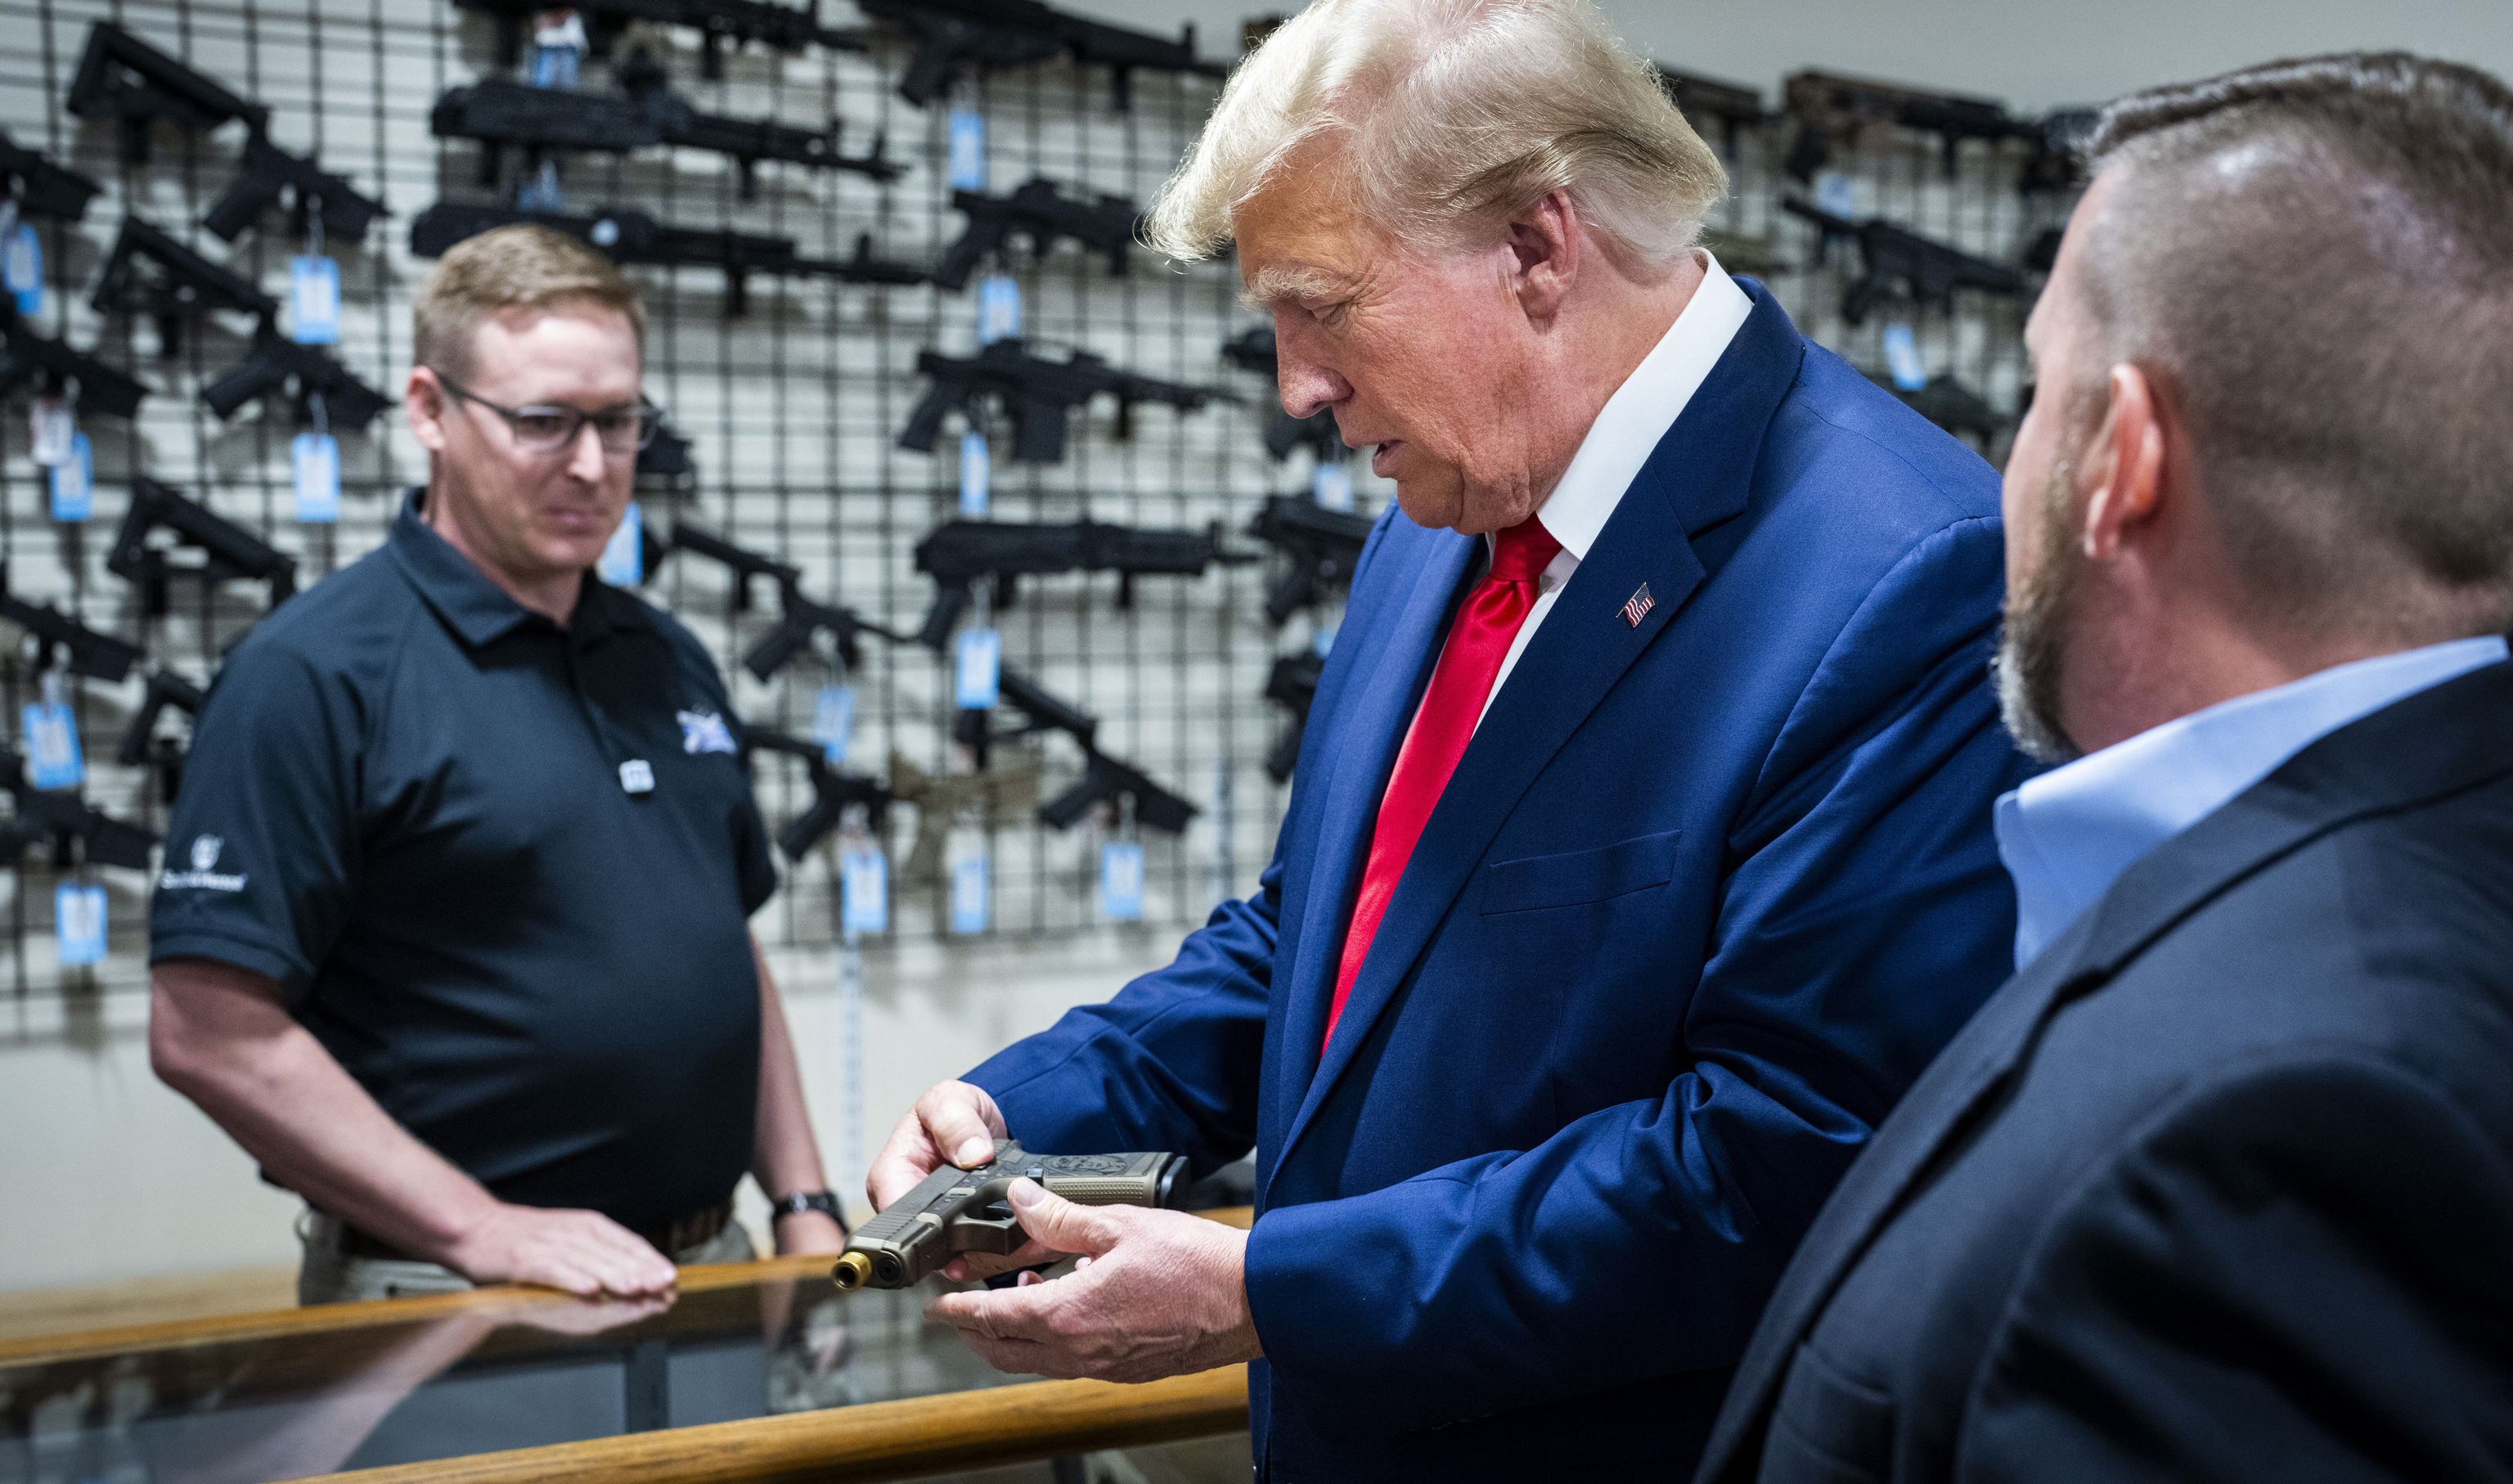 Polémica al decir Trump en un acto de campaña que quiere comprarse una pistola